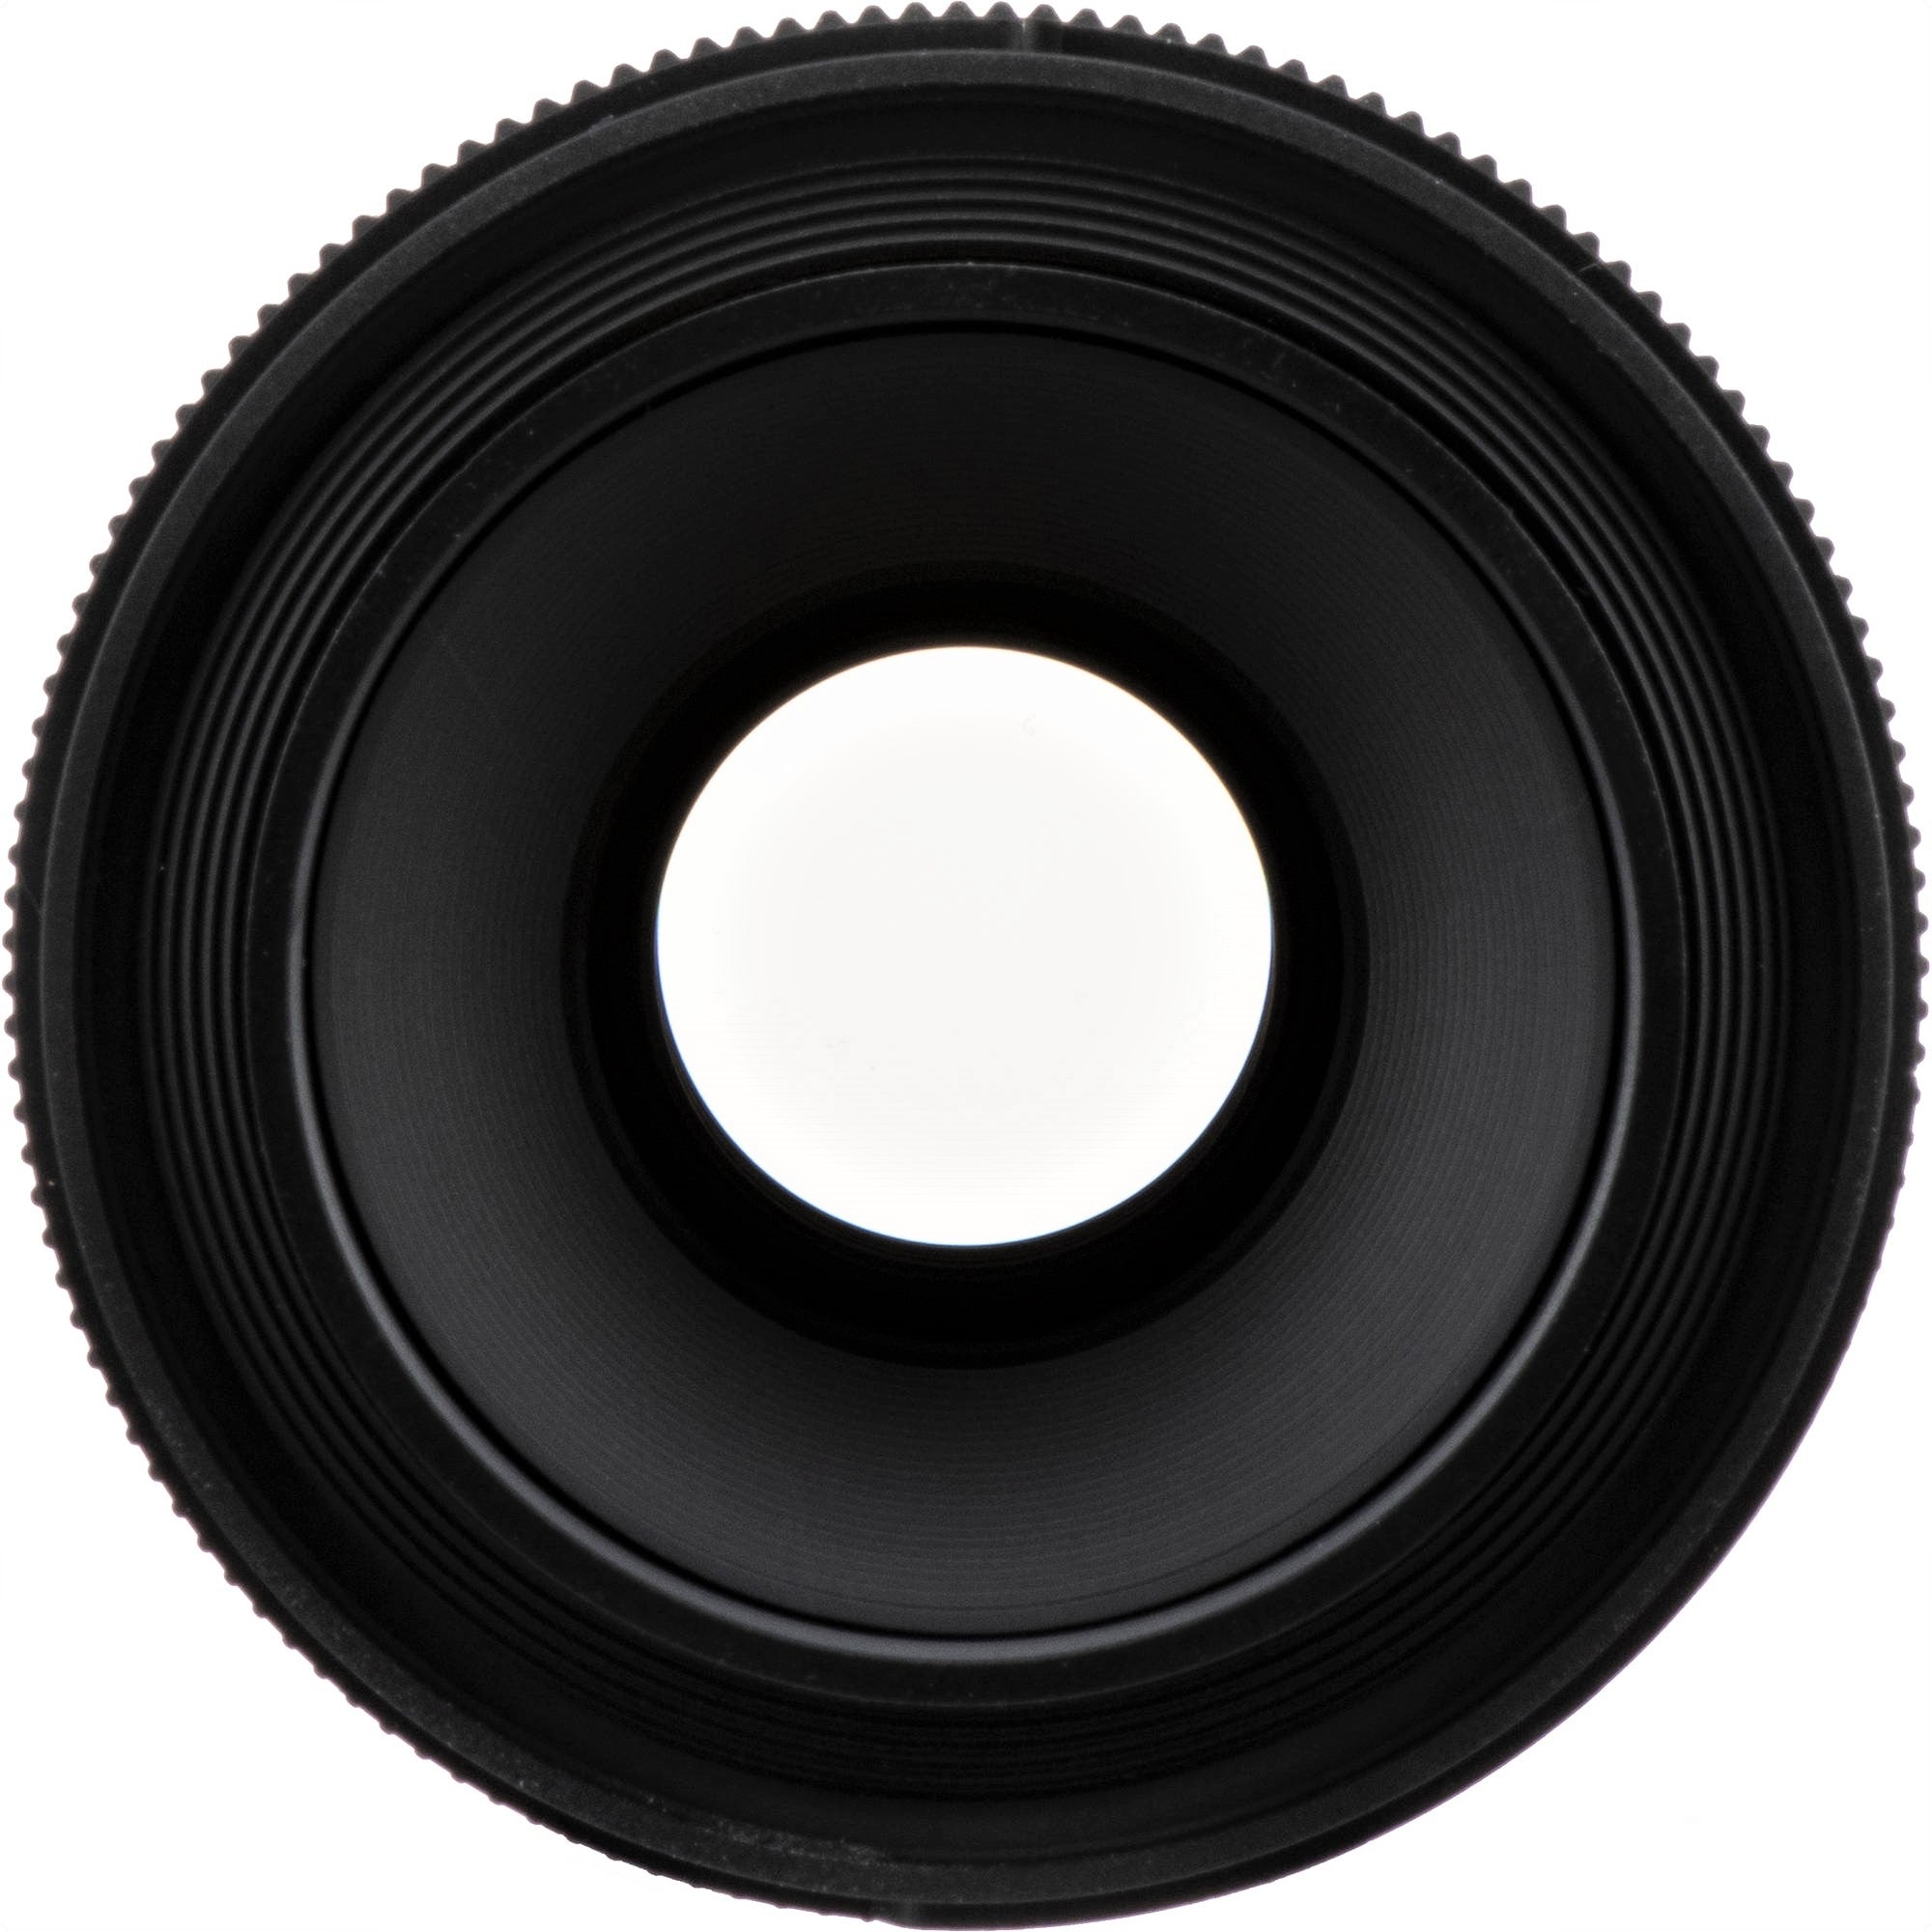 Sigma 70mm F2.8 DG Macro Art Lens for Sony E